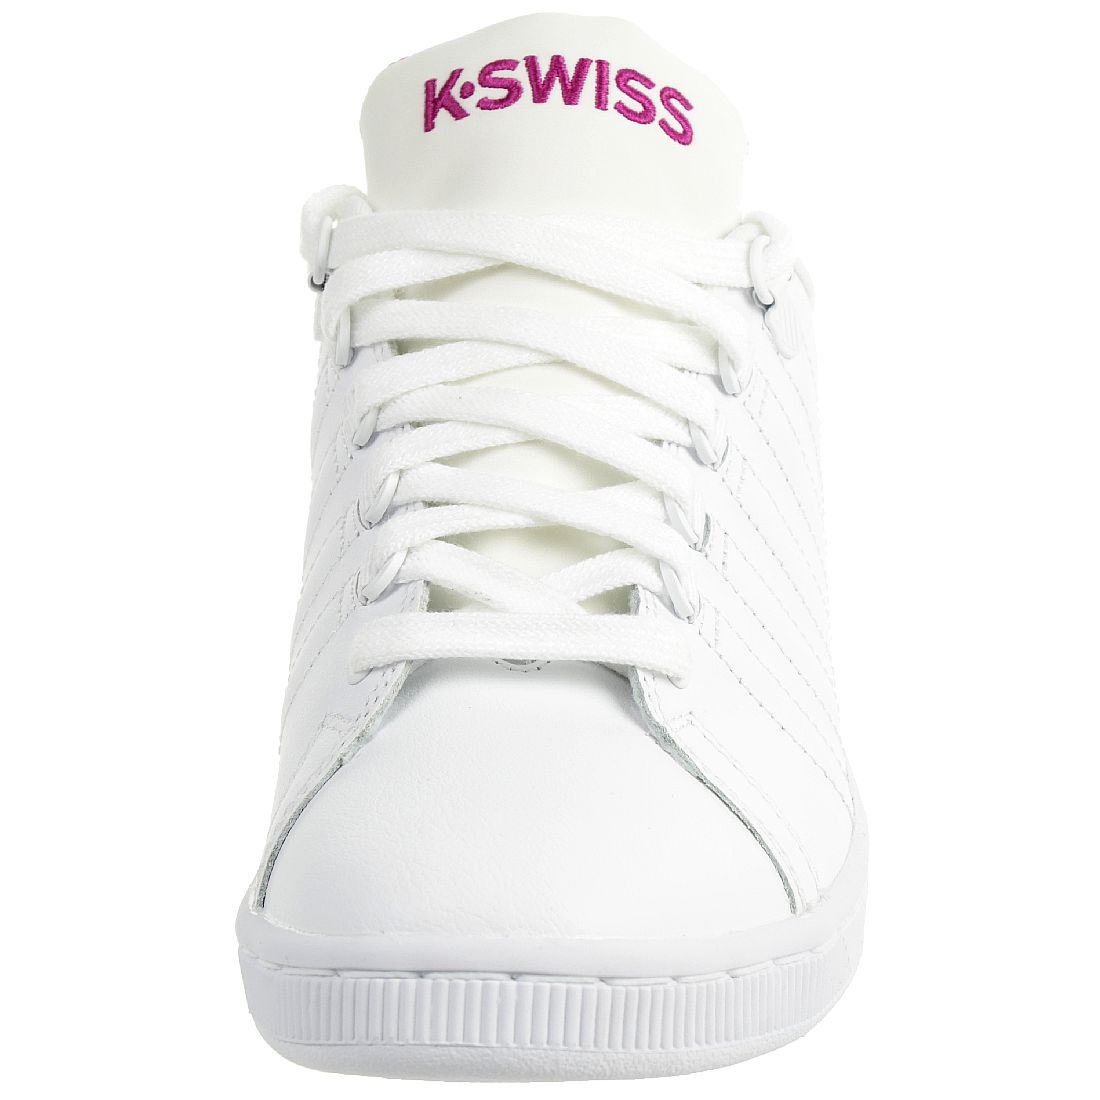 K-Swiss LOZAN III TT Damen Sneaker Schuhe weiss rosa 